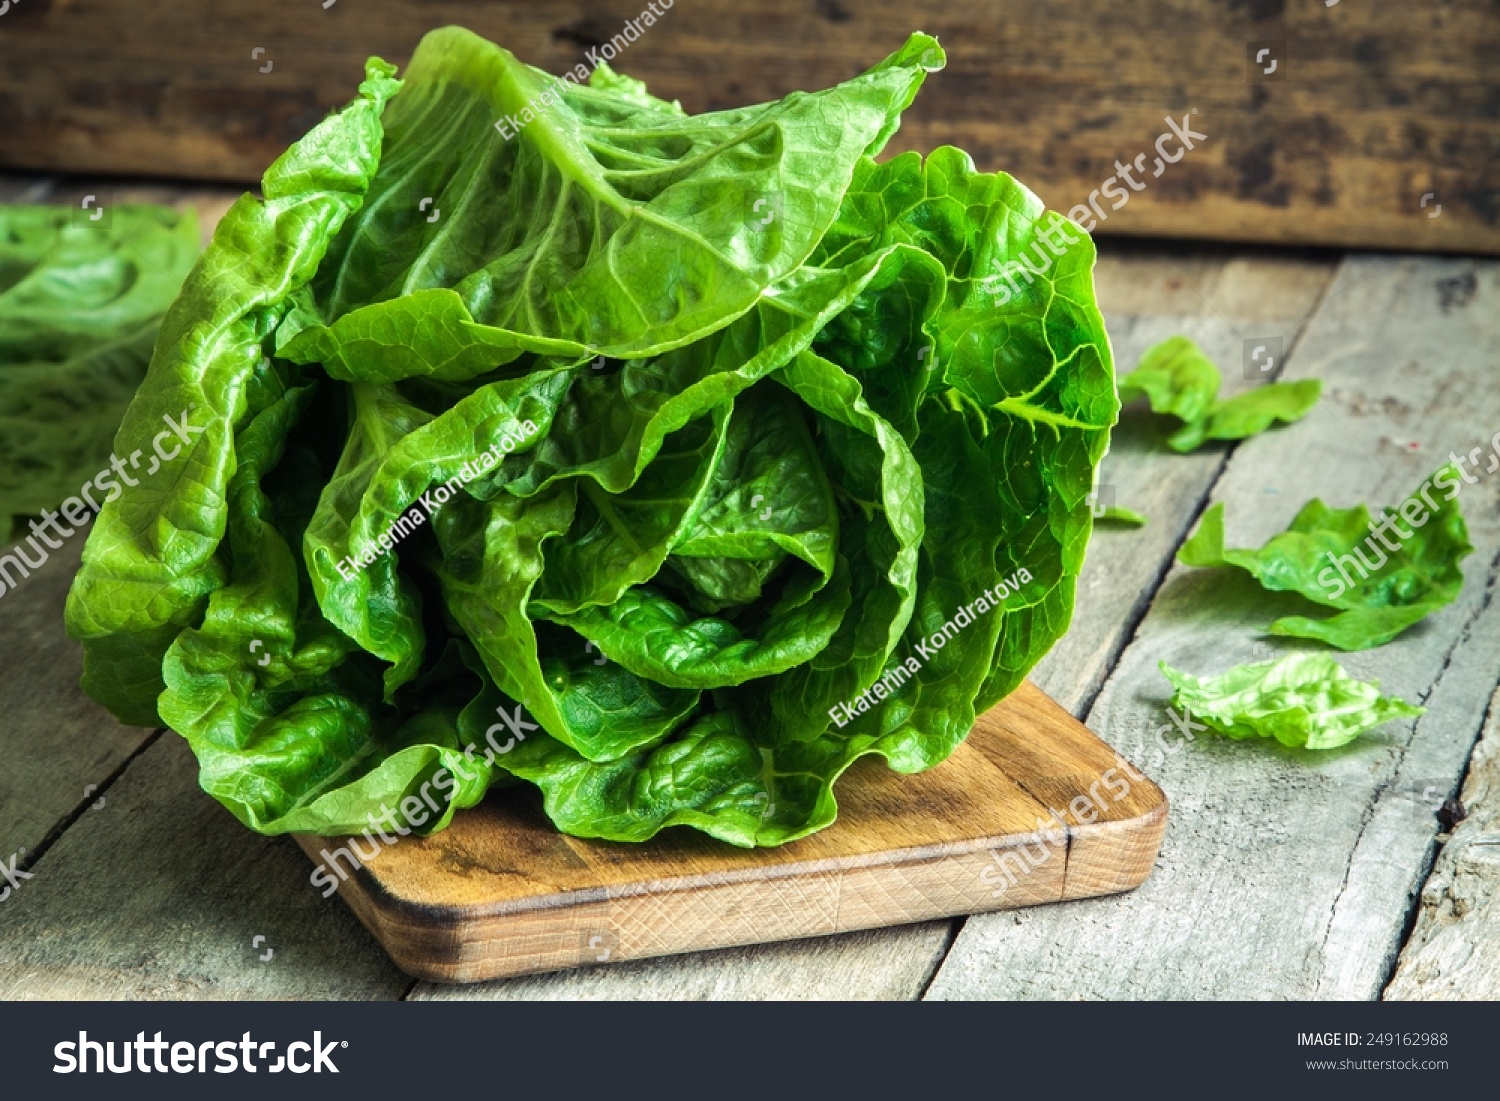 ripe organic green salad Romano on a cutting board #249162988